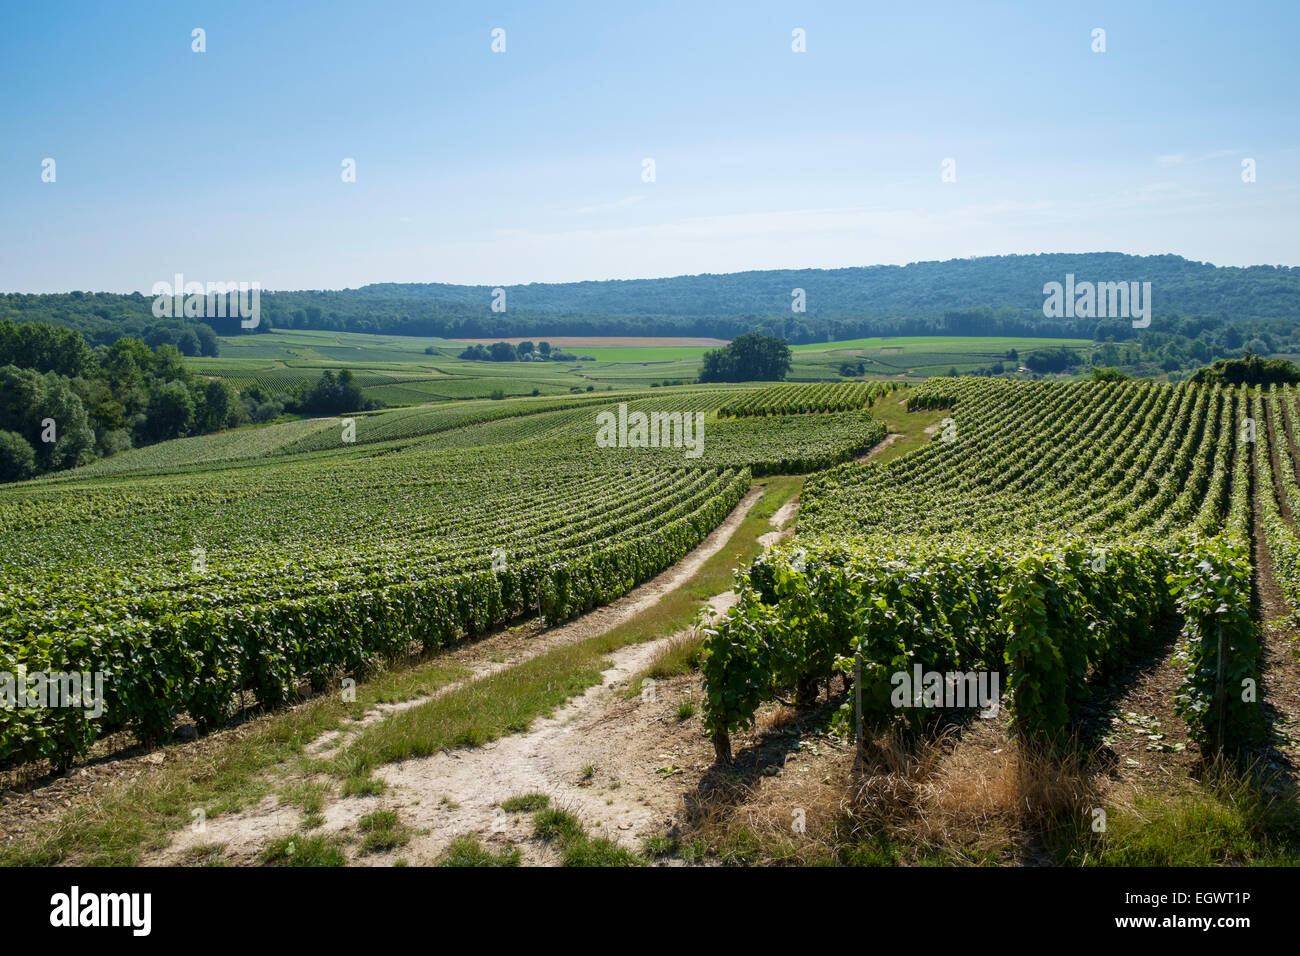 Vignoble, France - Les champs de vignes en Champagne, France, l'Europe en été Banque D'Images